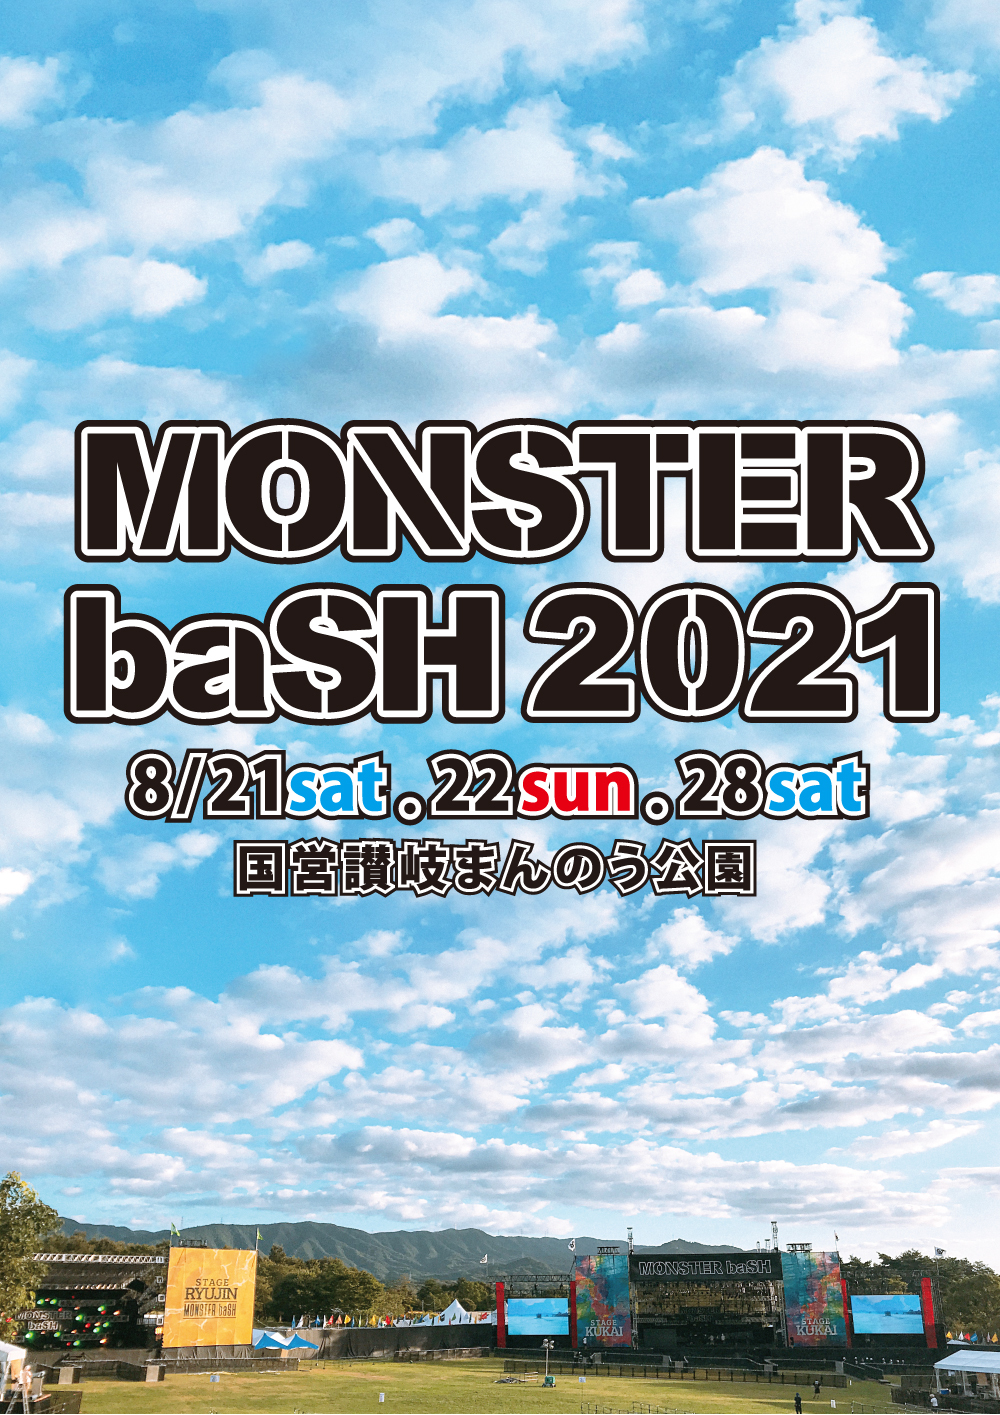 香川県の野外フェス Monster Bash 21 が開催中止を発表 Spice エンタメ特化型情報メディア スパイス